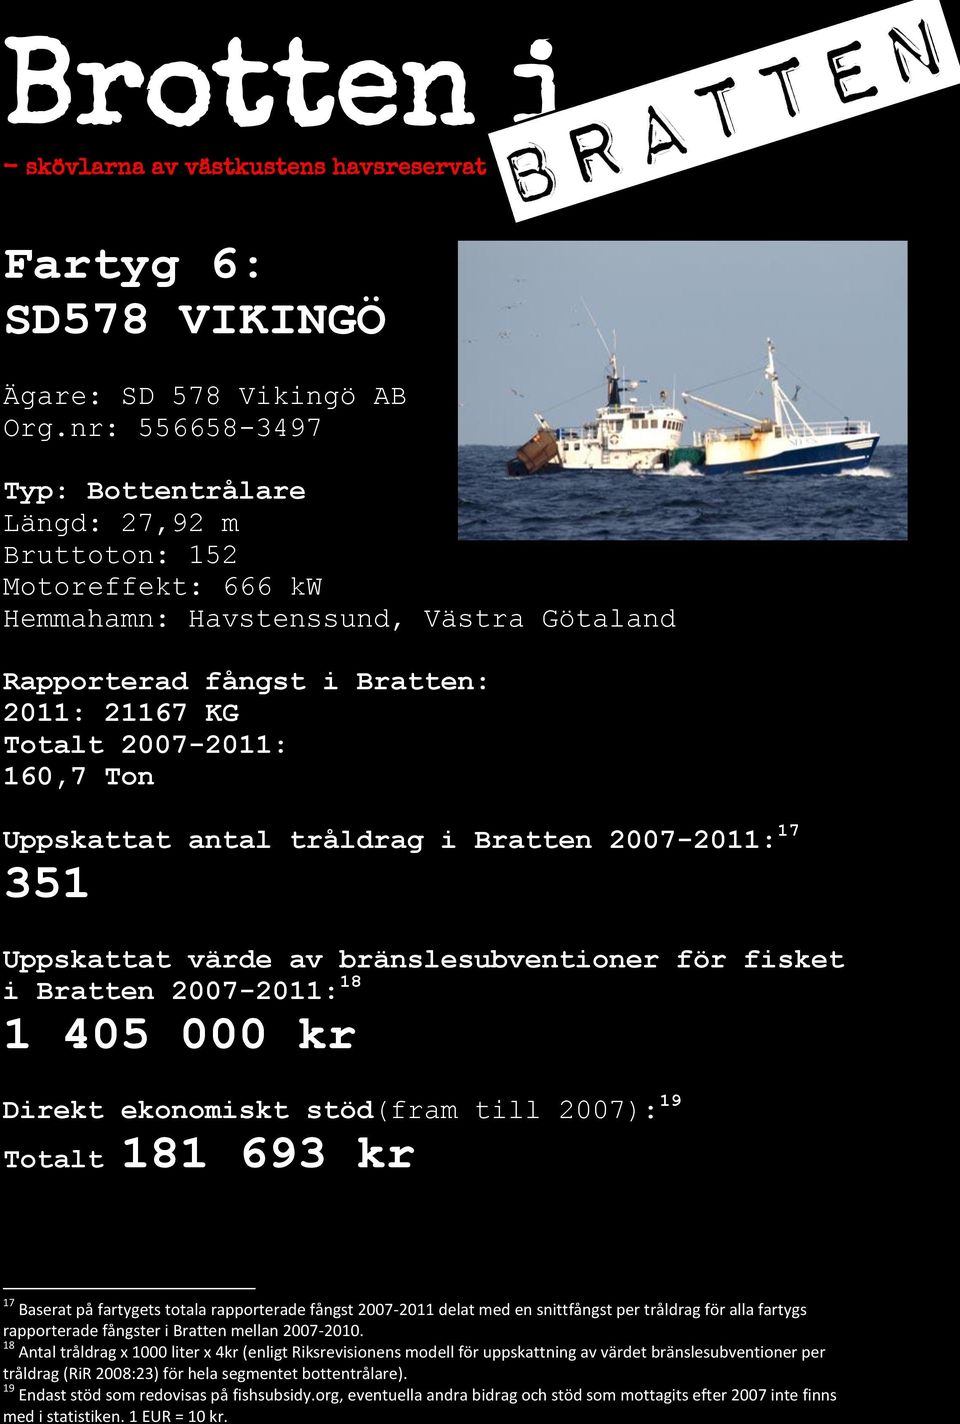 17 351 i Bratten 2007-2011: 18 1 405 000 kr Direkt ekonomiskt stöd(fram till 2007): 19 Totalt 181 693 kr 17 Baserat på fartygets totala rapporterade fångst 2007-2011 delat med en